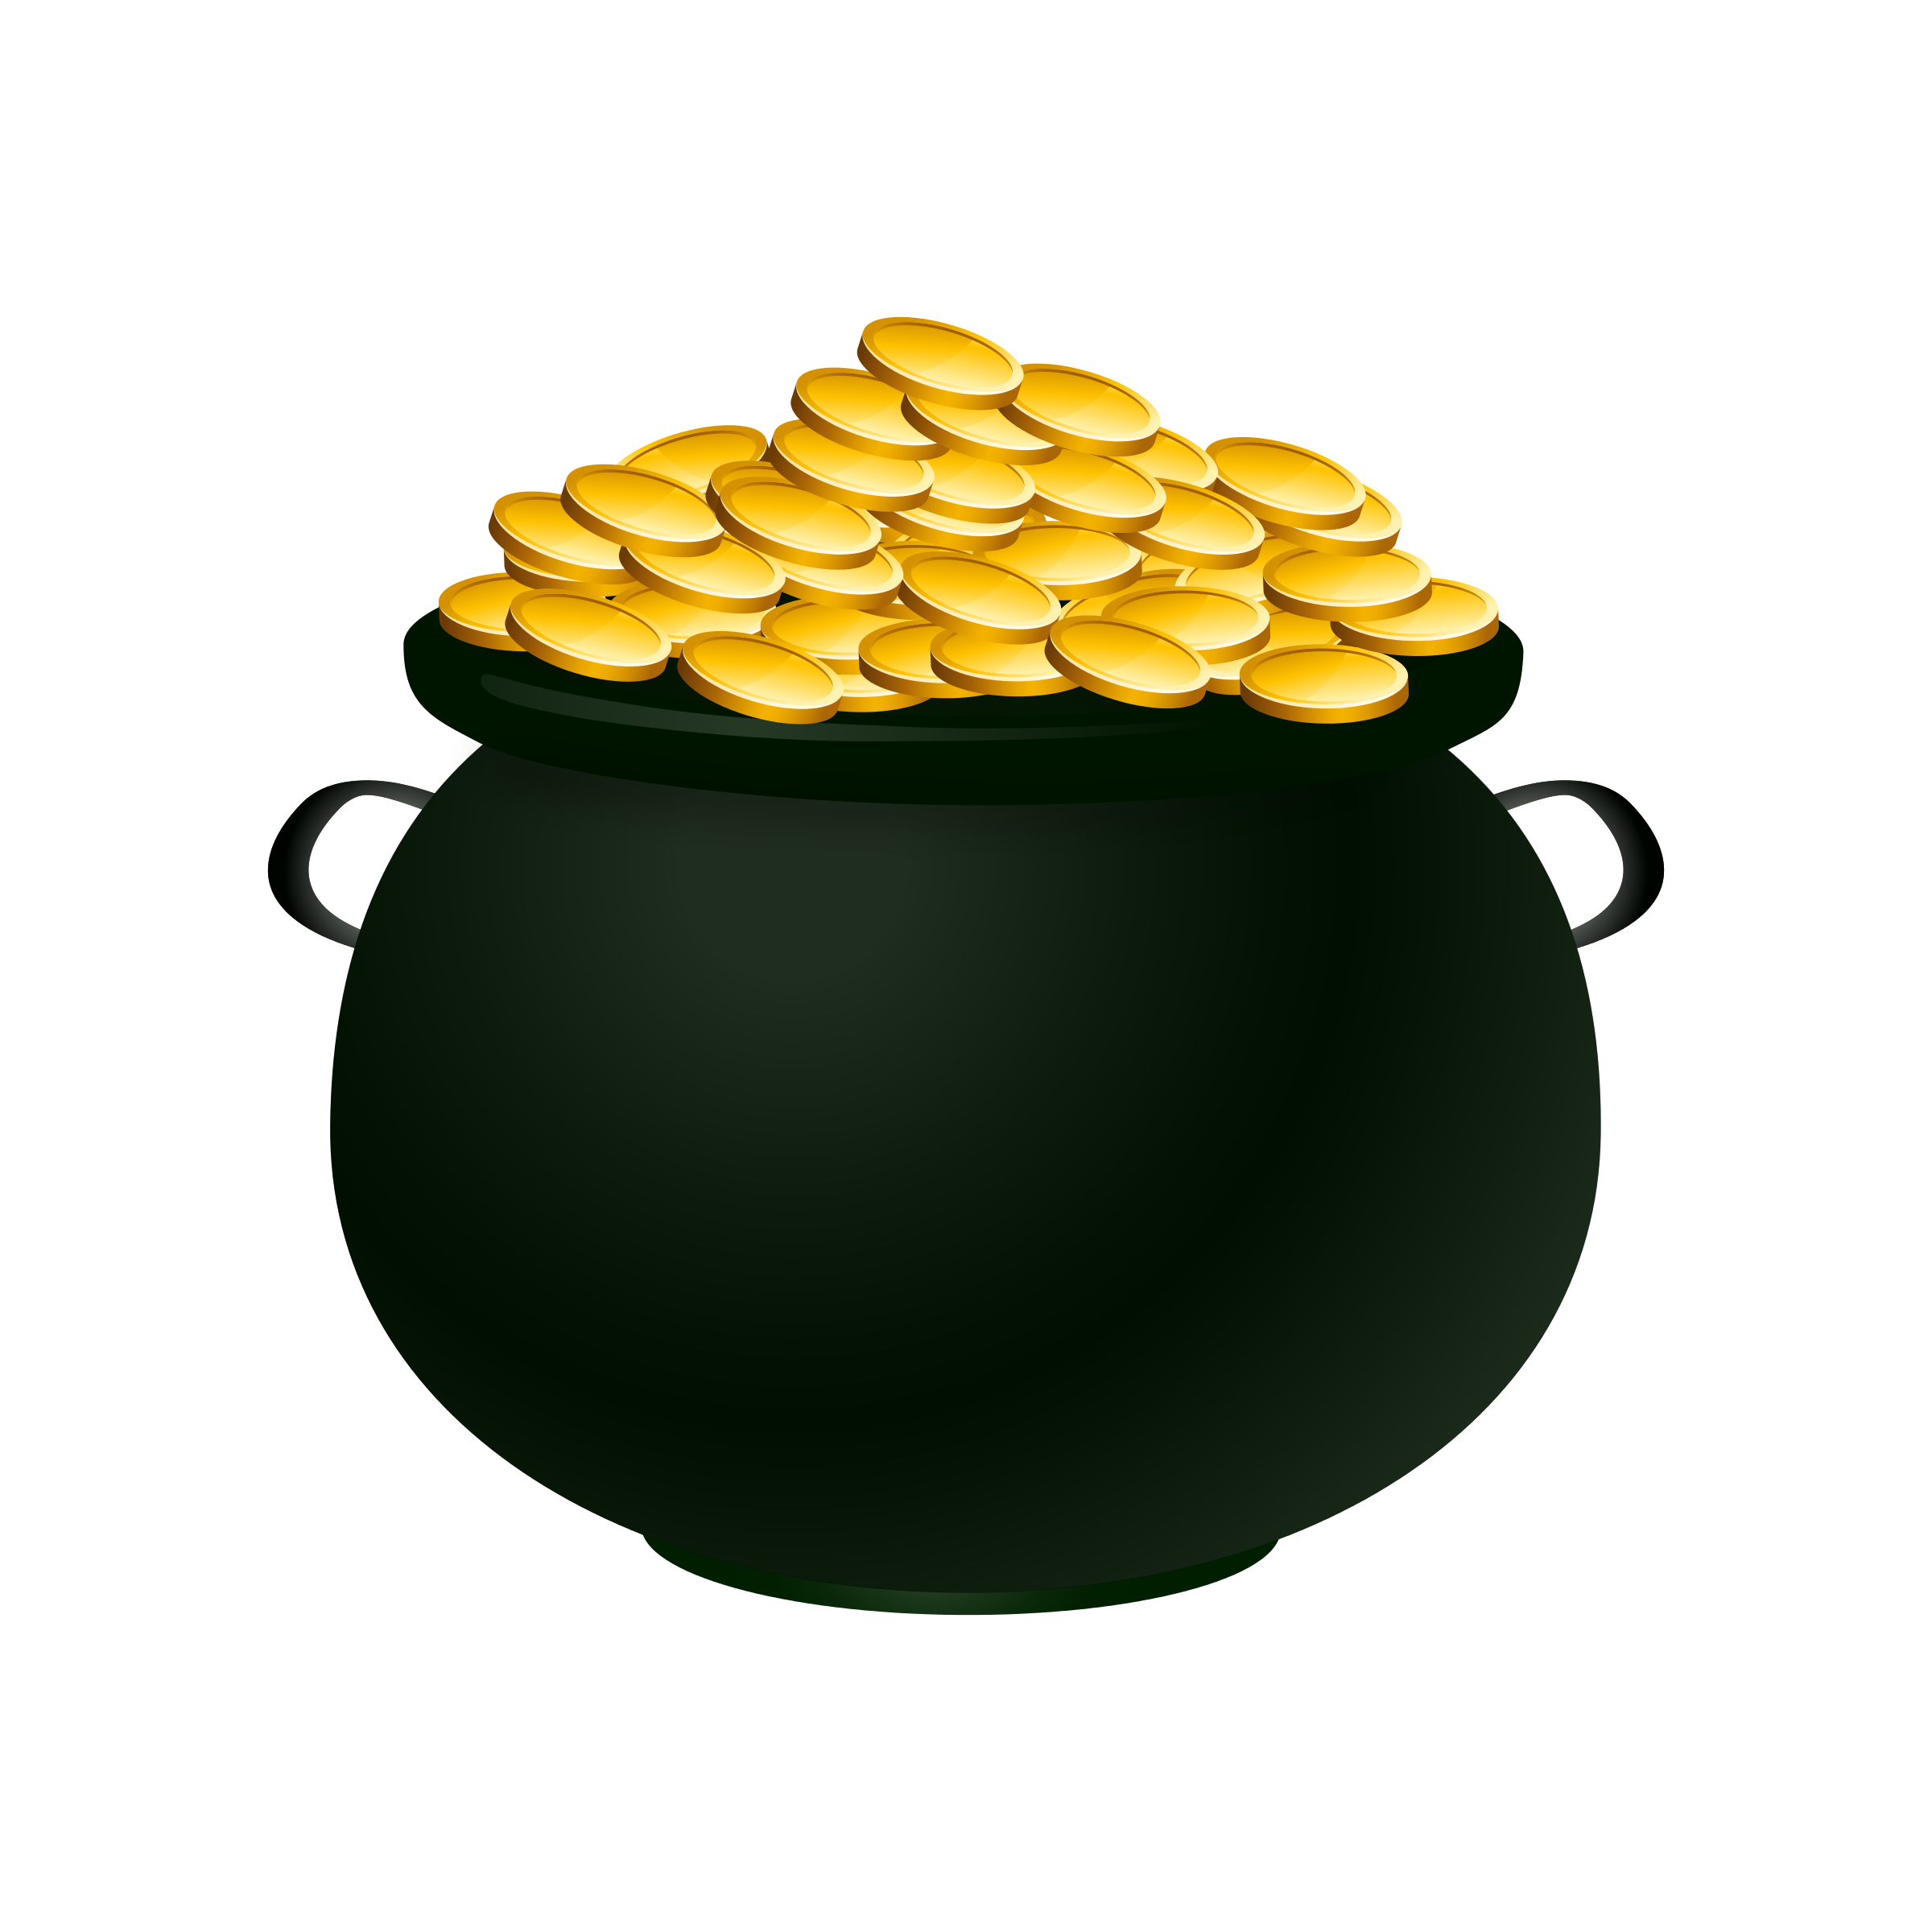 Pot of gold clip art